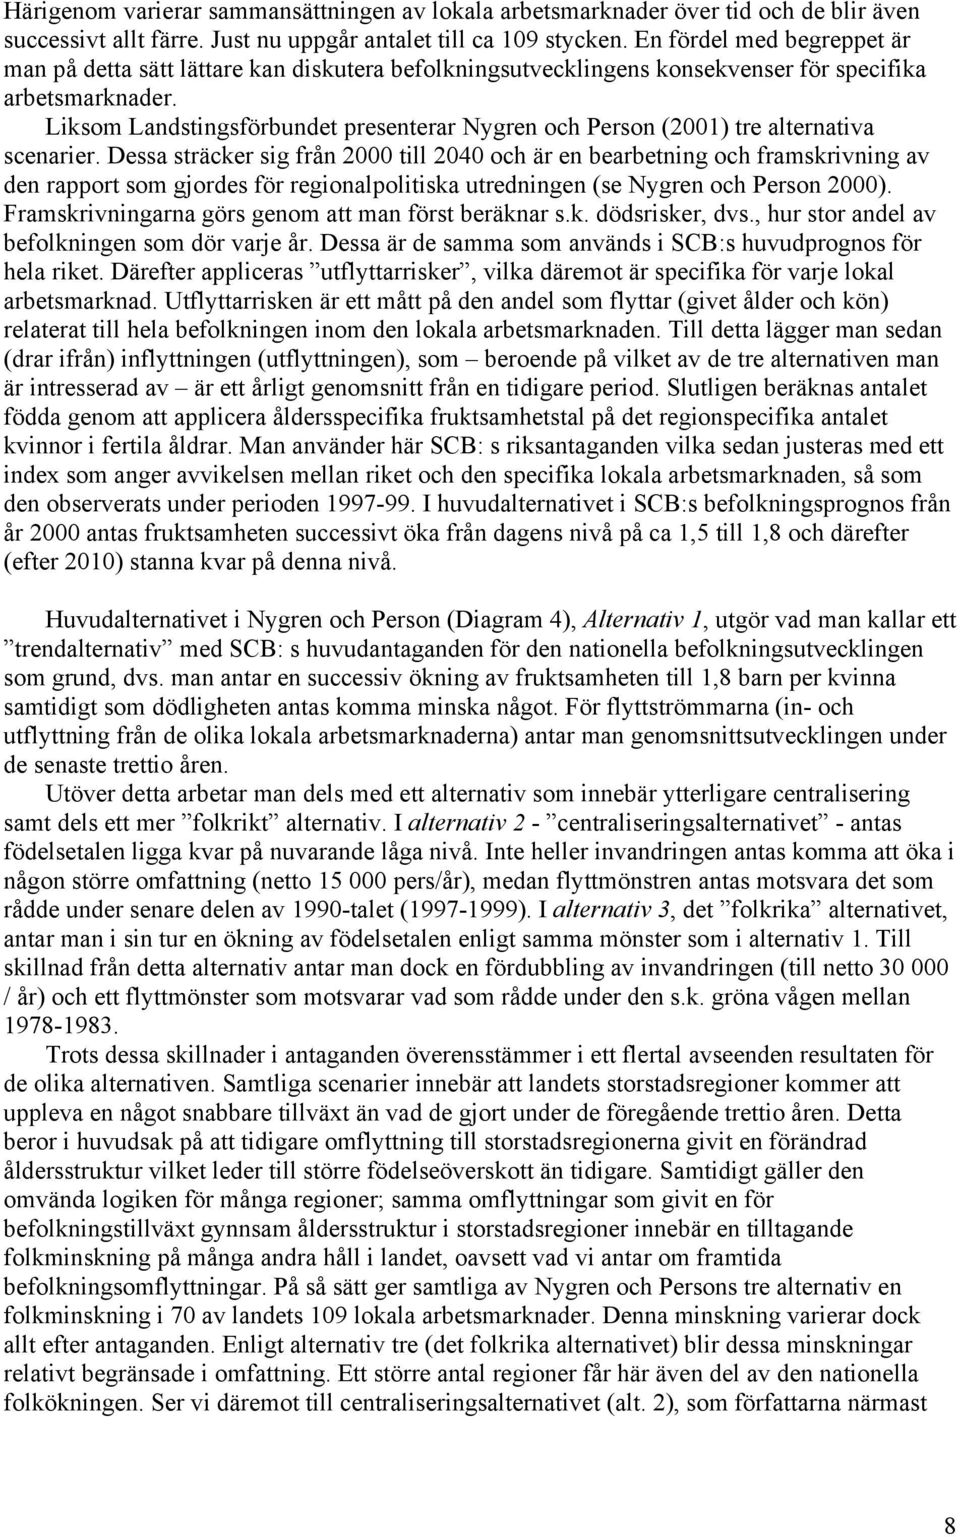 Liksom Landstingsförbundet presenterar Nygren och Person (2001) tre alternativa scenarier.